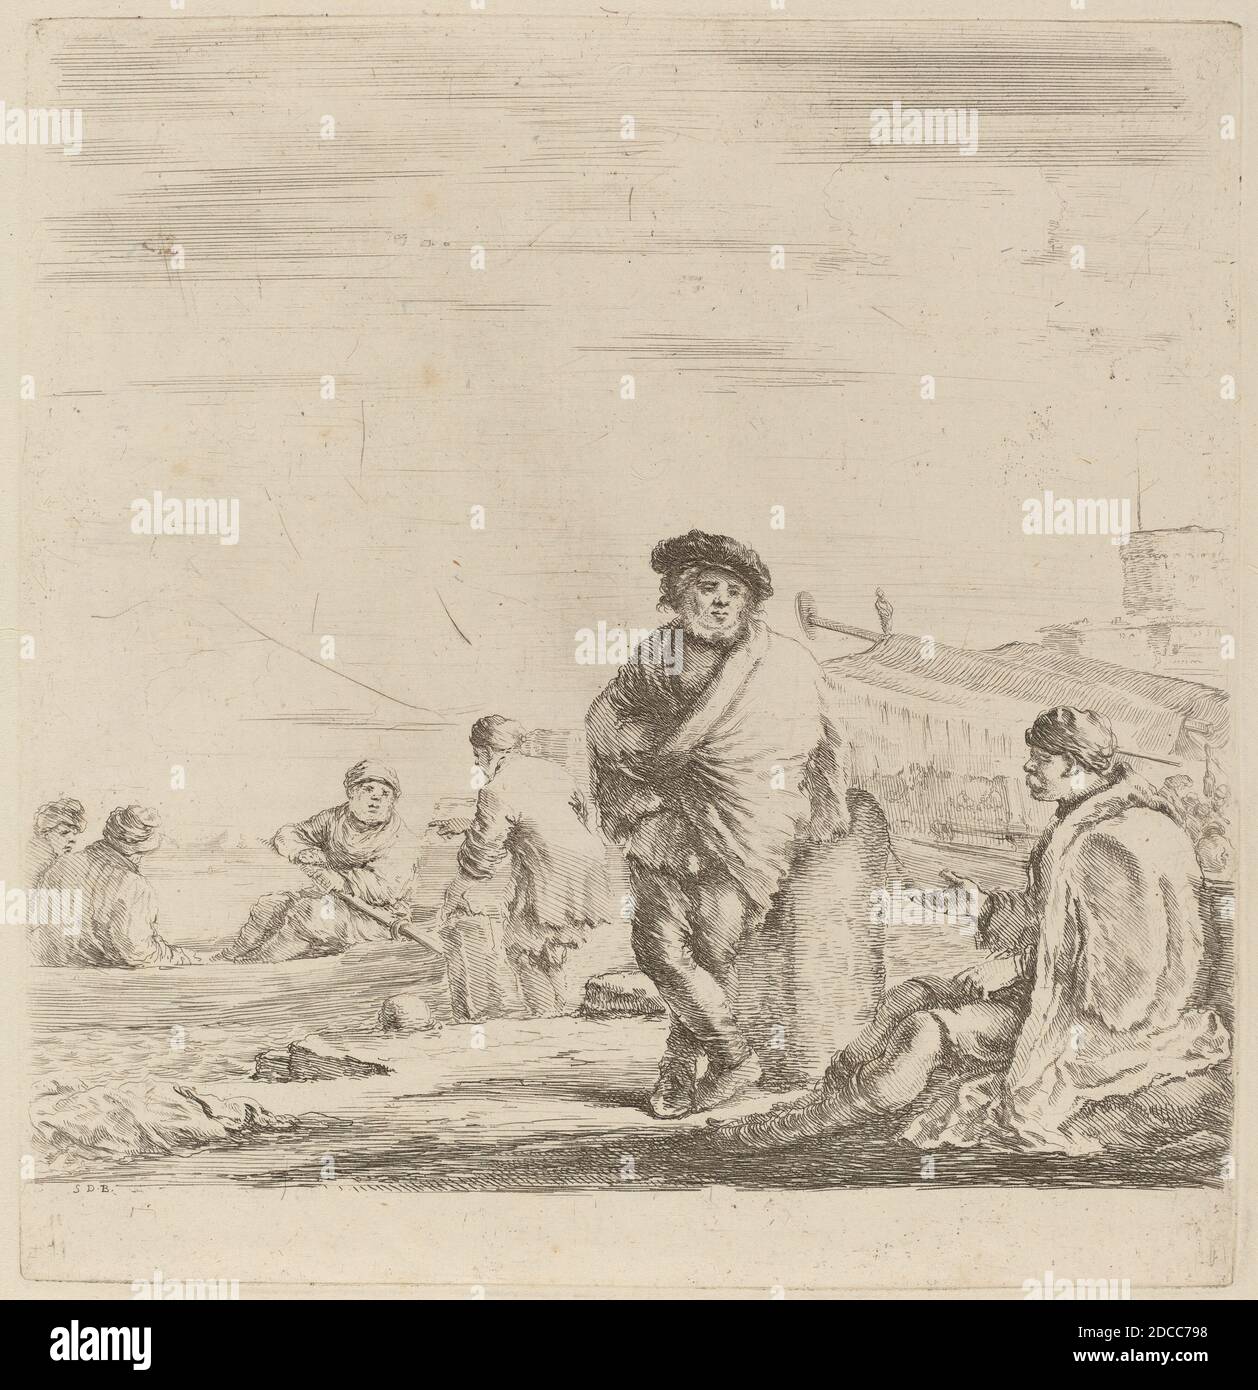 Stefano della Bella, (artista), fiorentino, 1610 - 1664, Sailor in piedi che parla con una Levantina seduta, Quadreria Medicea, vol.3 (1986.50.11-108), (serie), incisione su carta deposta Foto Stock